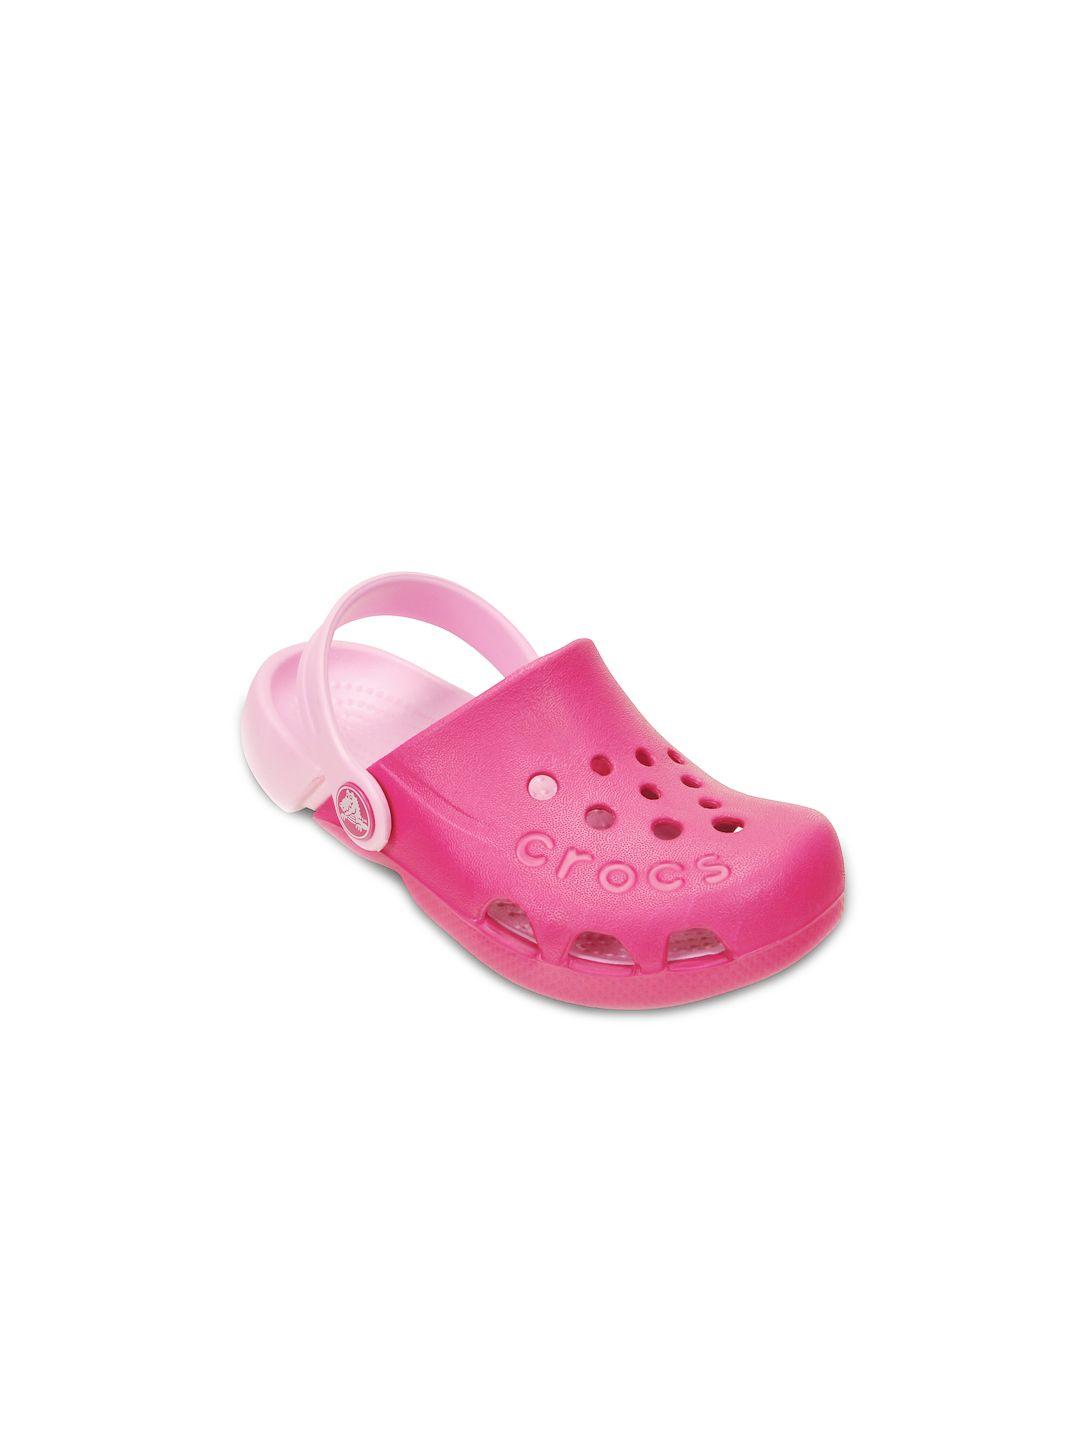 crocs electro  girls pink clogs